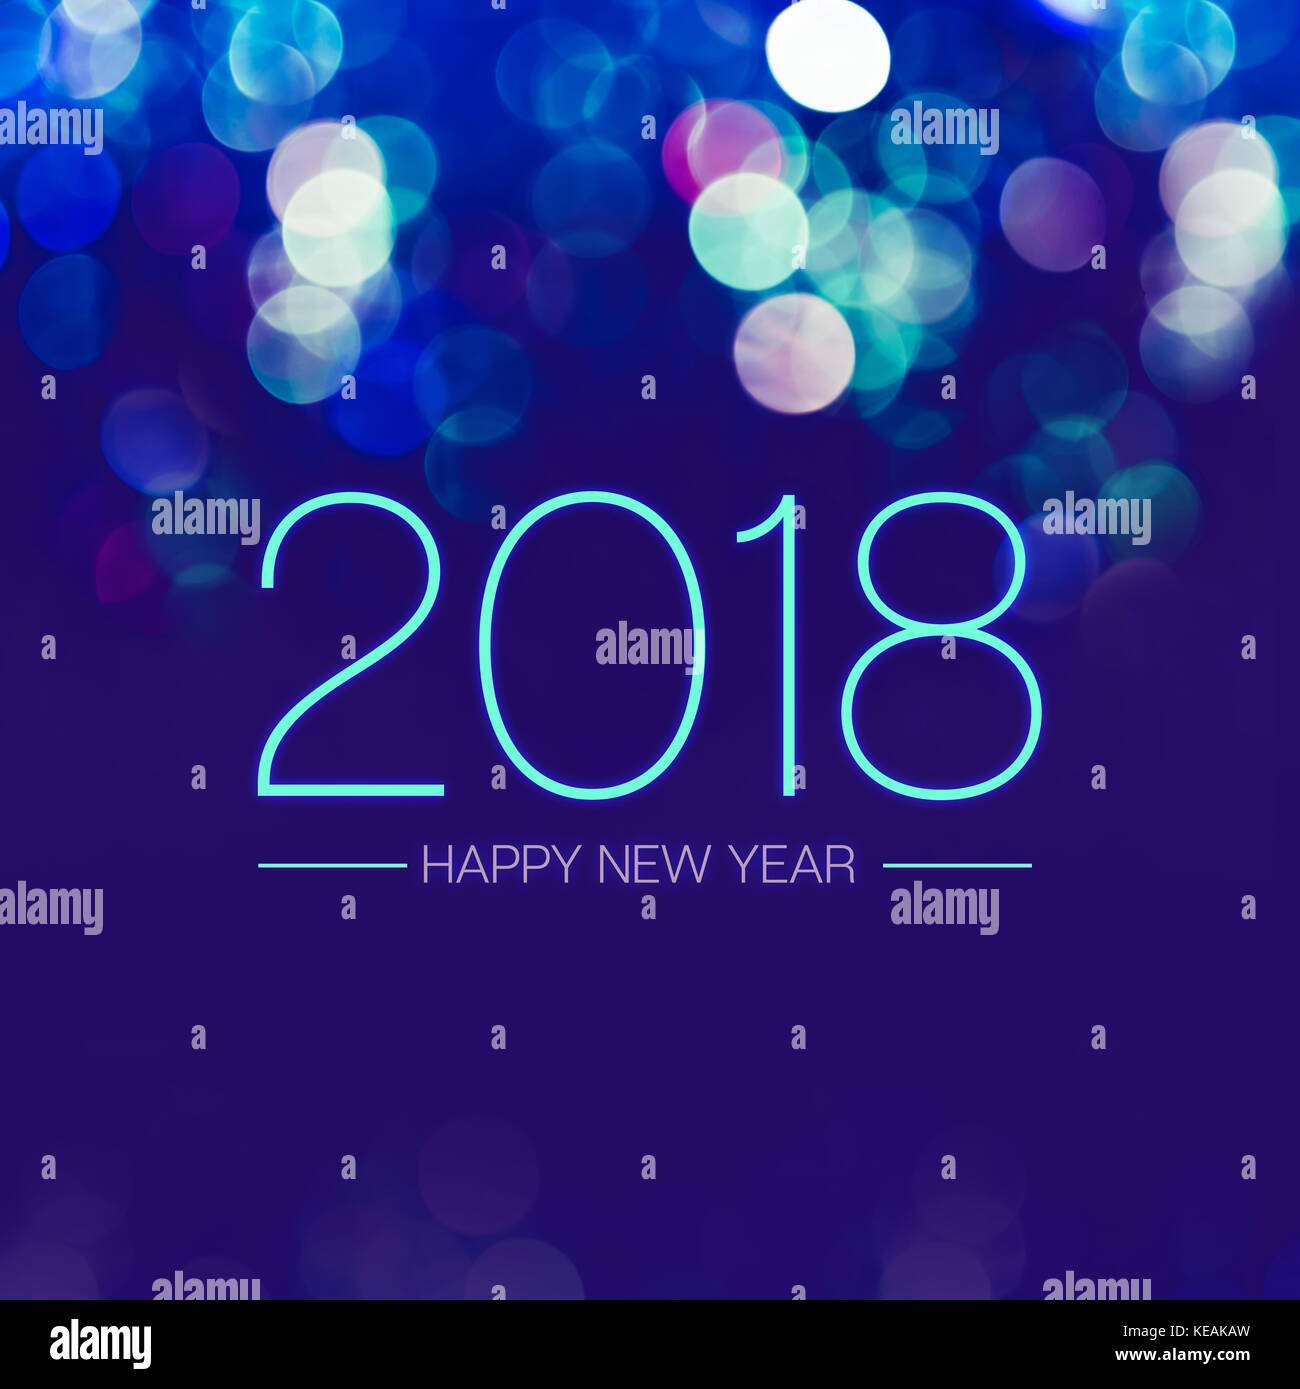 Felice anno nuovo 2018 con blue bokeh luce scintillante sul blu scuro dello sfondo viola,holiday greeting card. Foto Stock